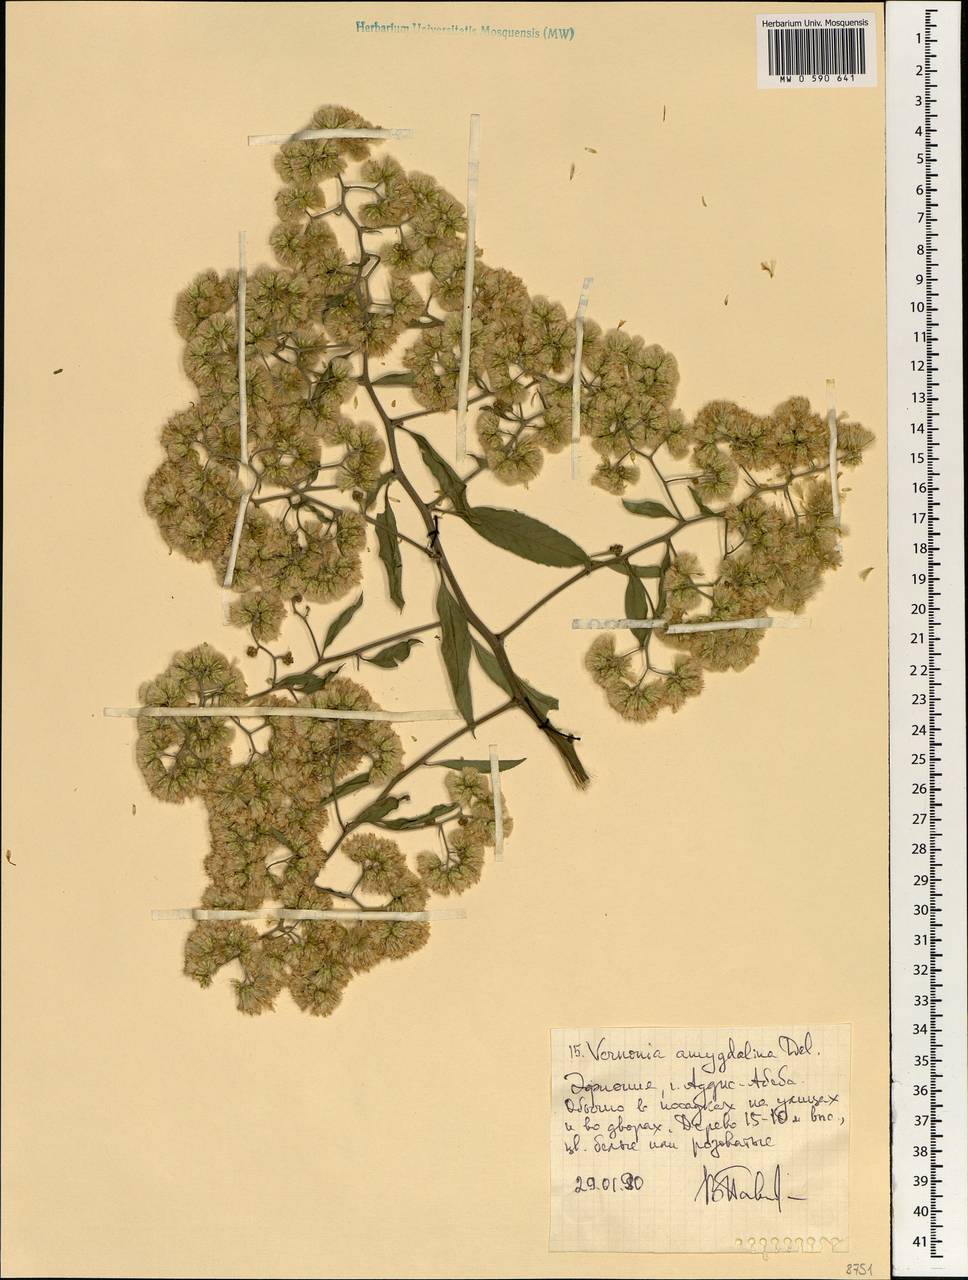 Gymnanthemum amygdalinum (Delile) Sch. Bip. ex Walp., Africa (AFR) (Ethiopia)